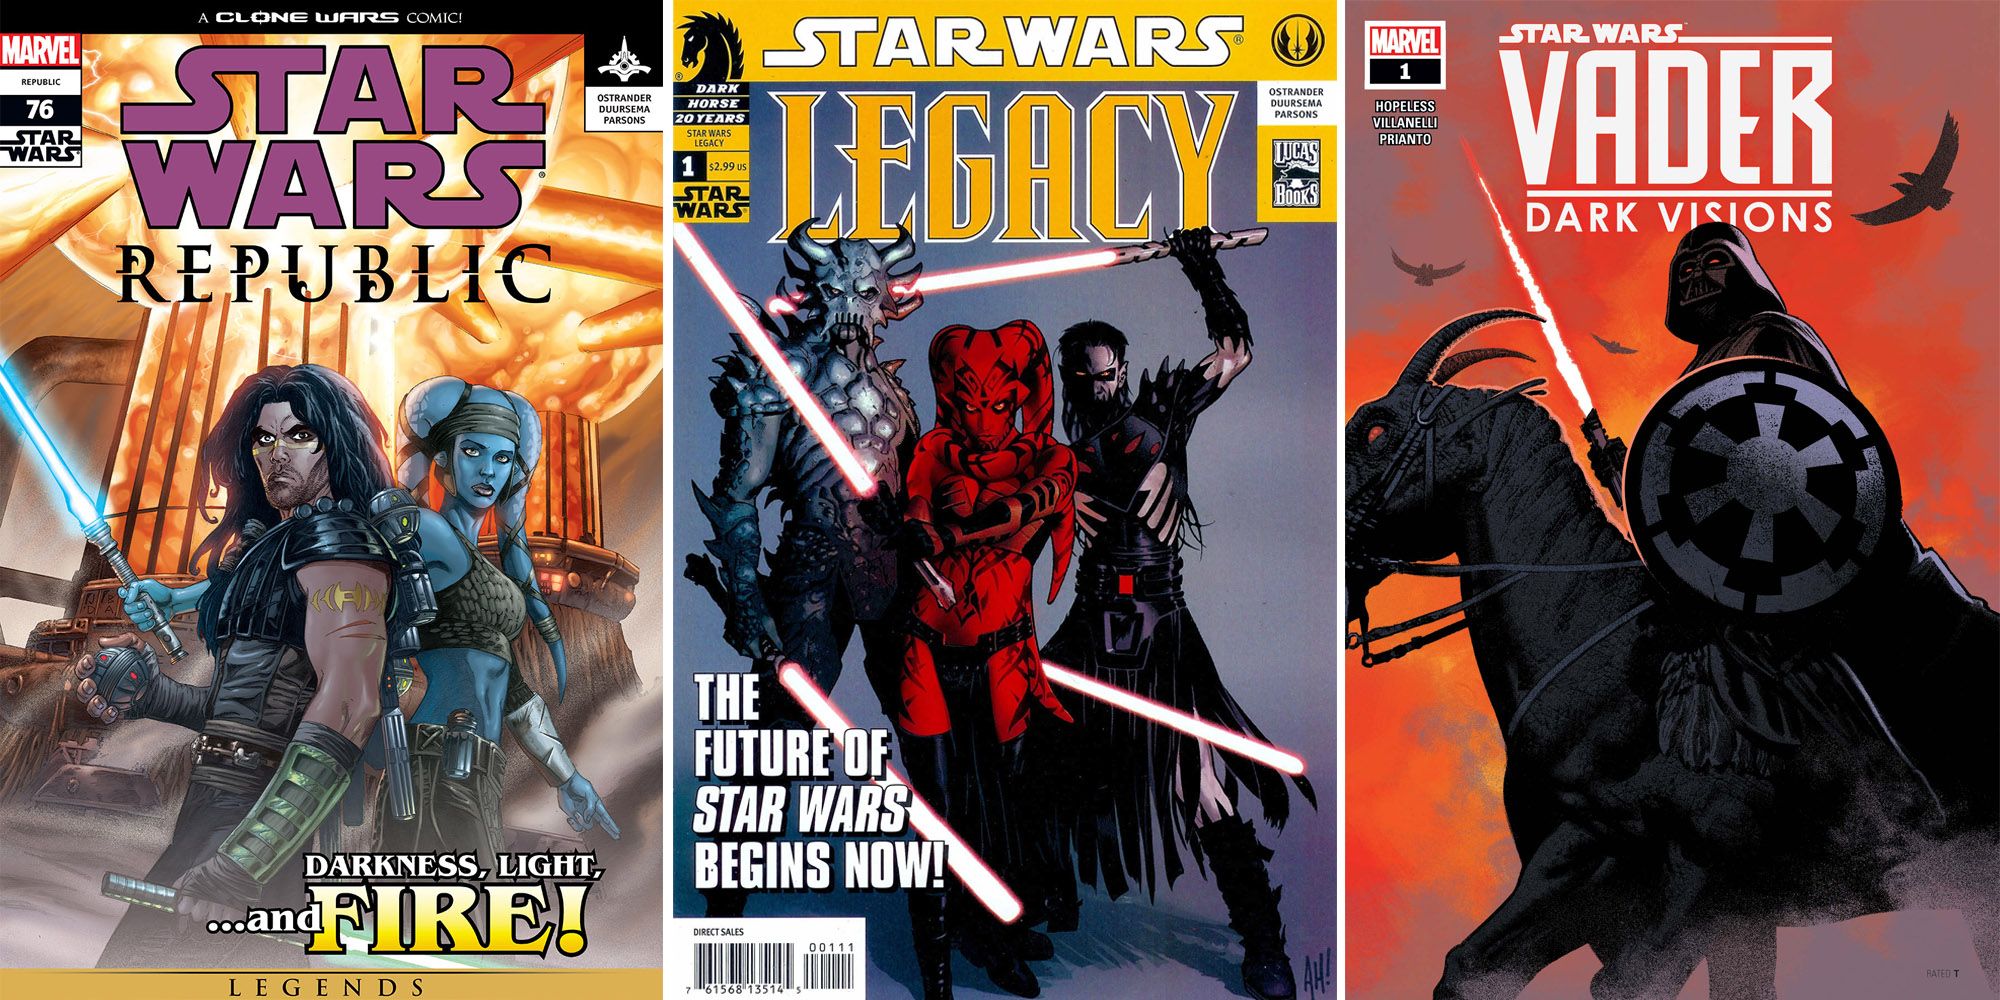 I migliori fumetti di Star Wars che ogni fan dovrebbe leggere